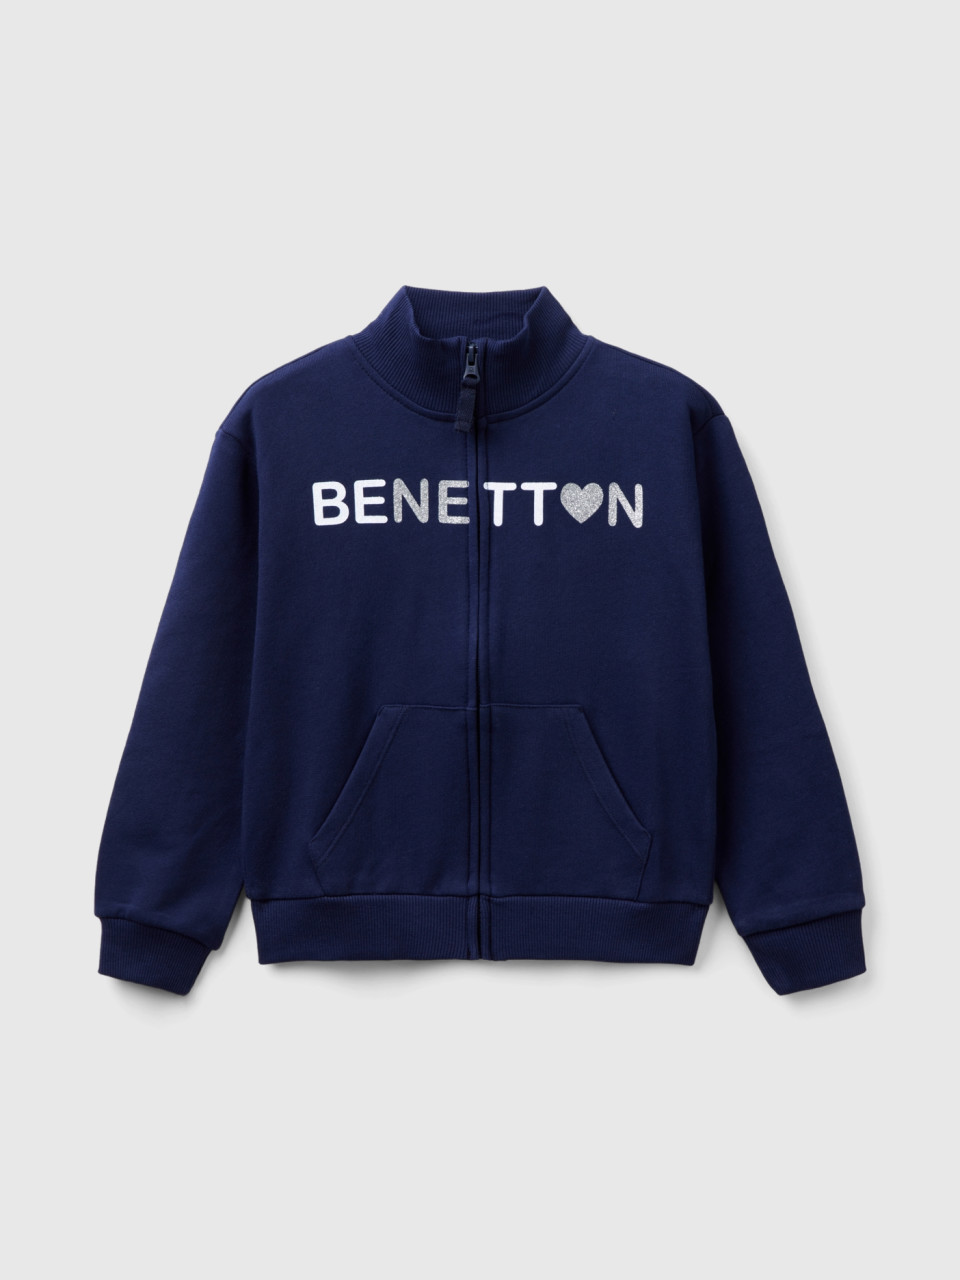 Benetton, Sweatshirt With Zip And Collar, Dark Blue, Kids